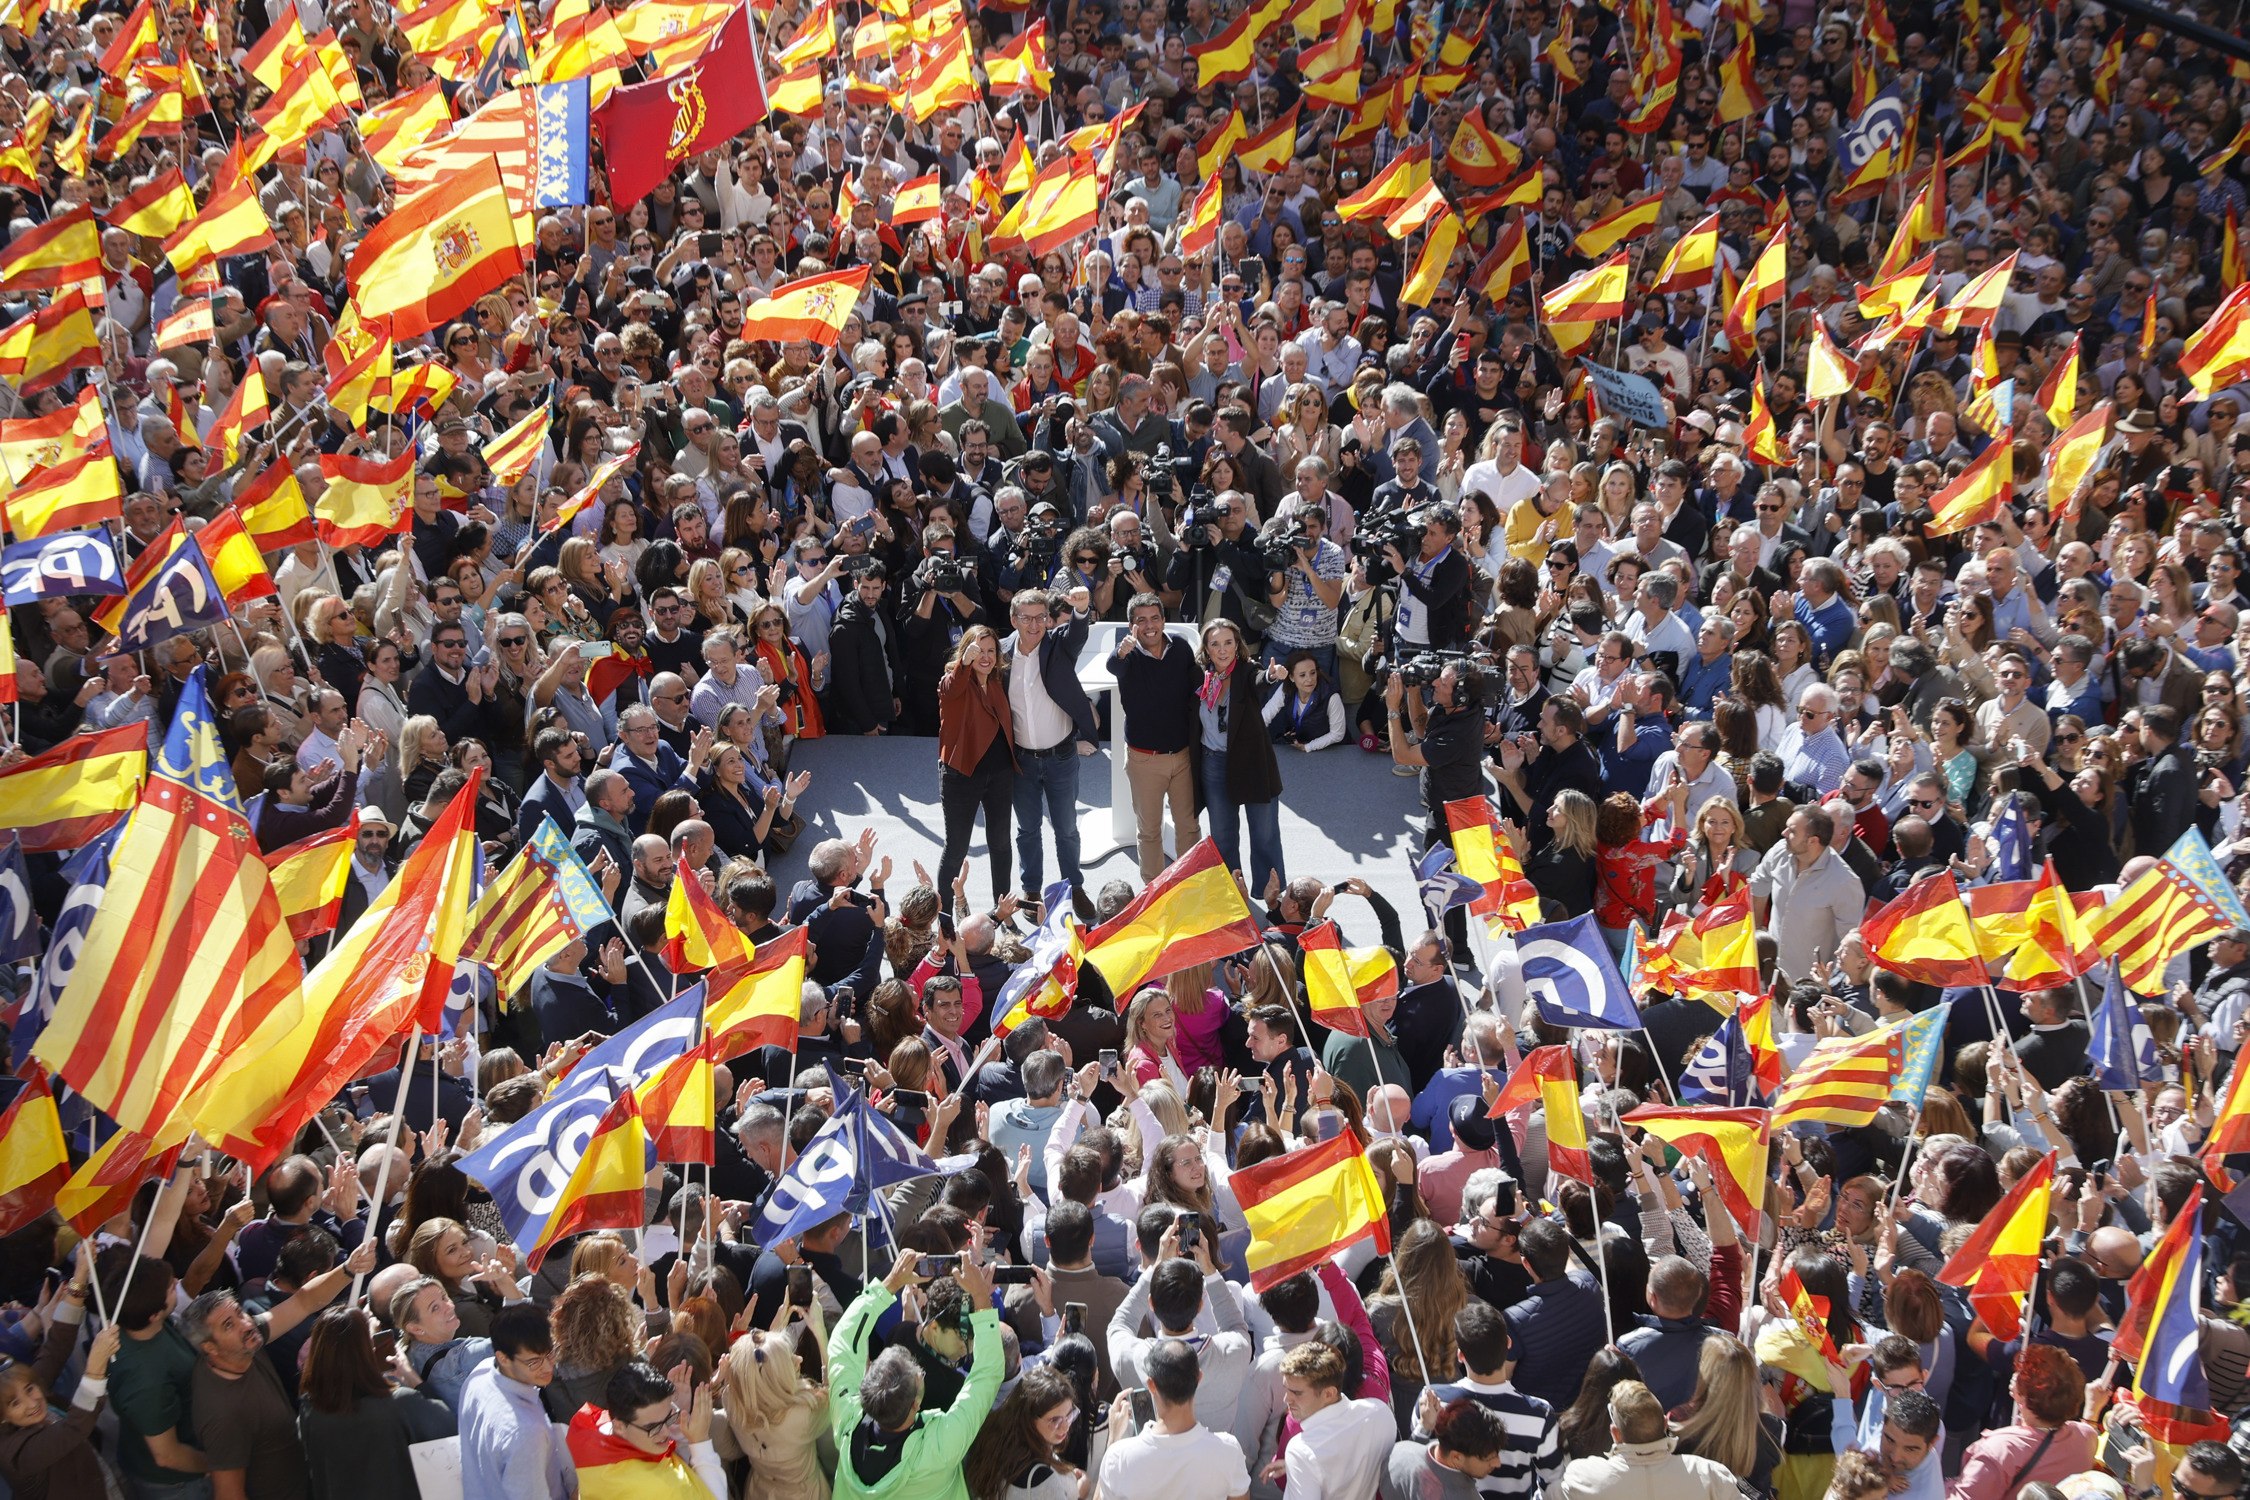 Feijóo toca a sometent contra l’amnistia i alerta que “defensarà Espanya" des de les institucions